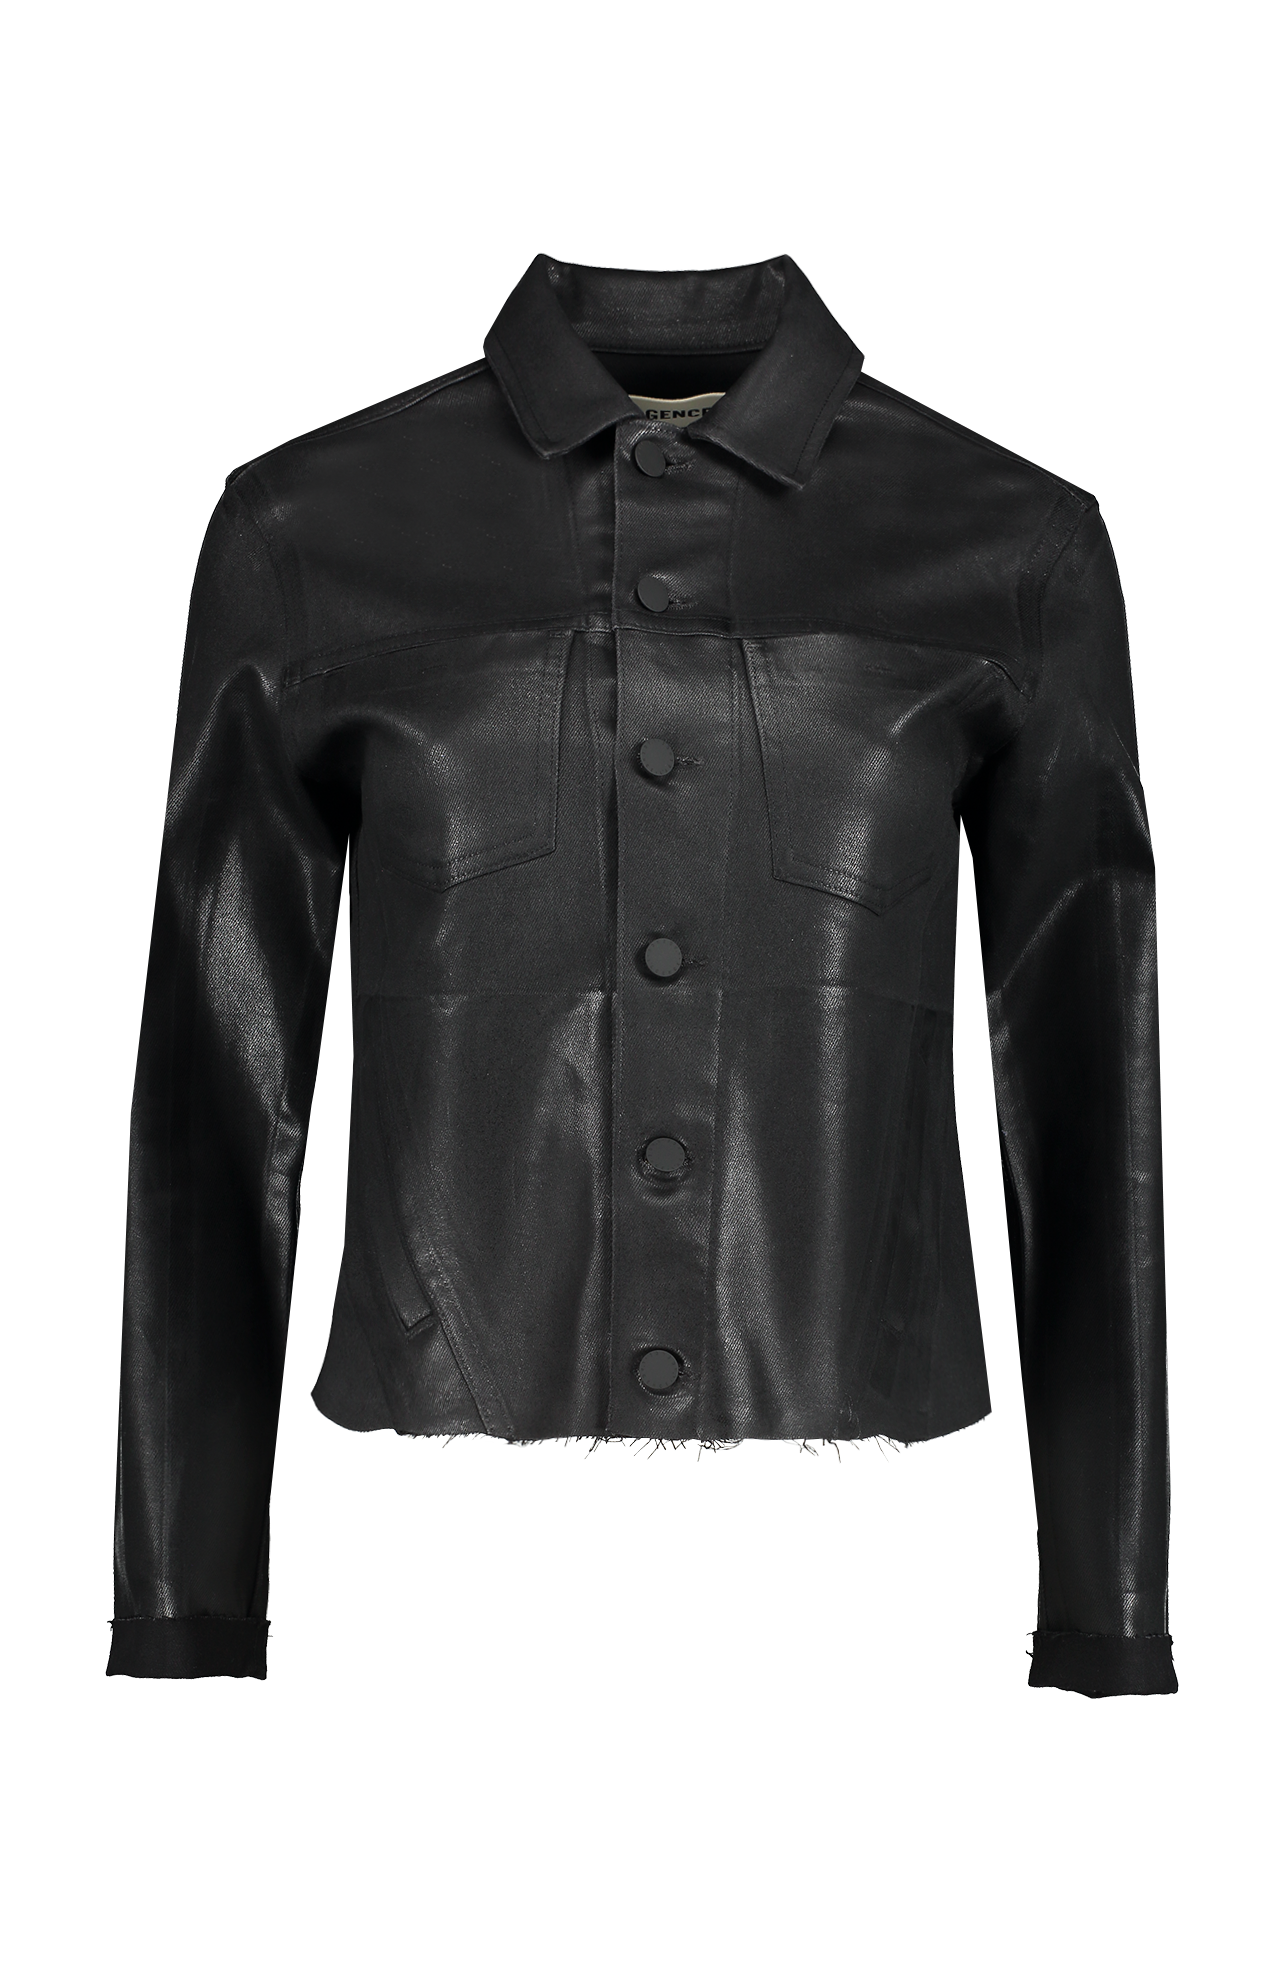 Lagence Janelle Slim Jacket Front Mannequin Image (6990794424435)